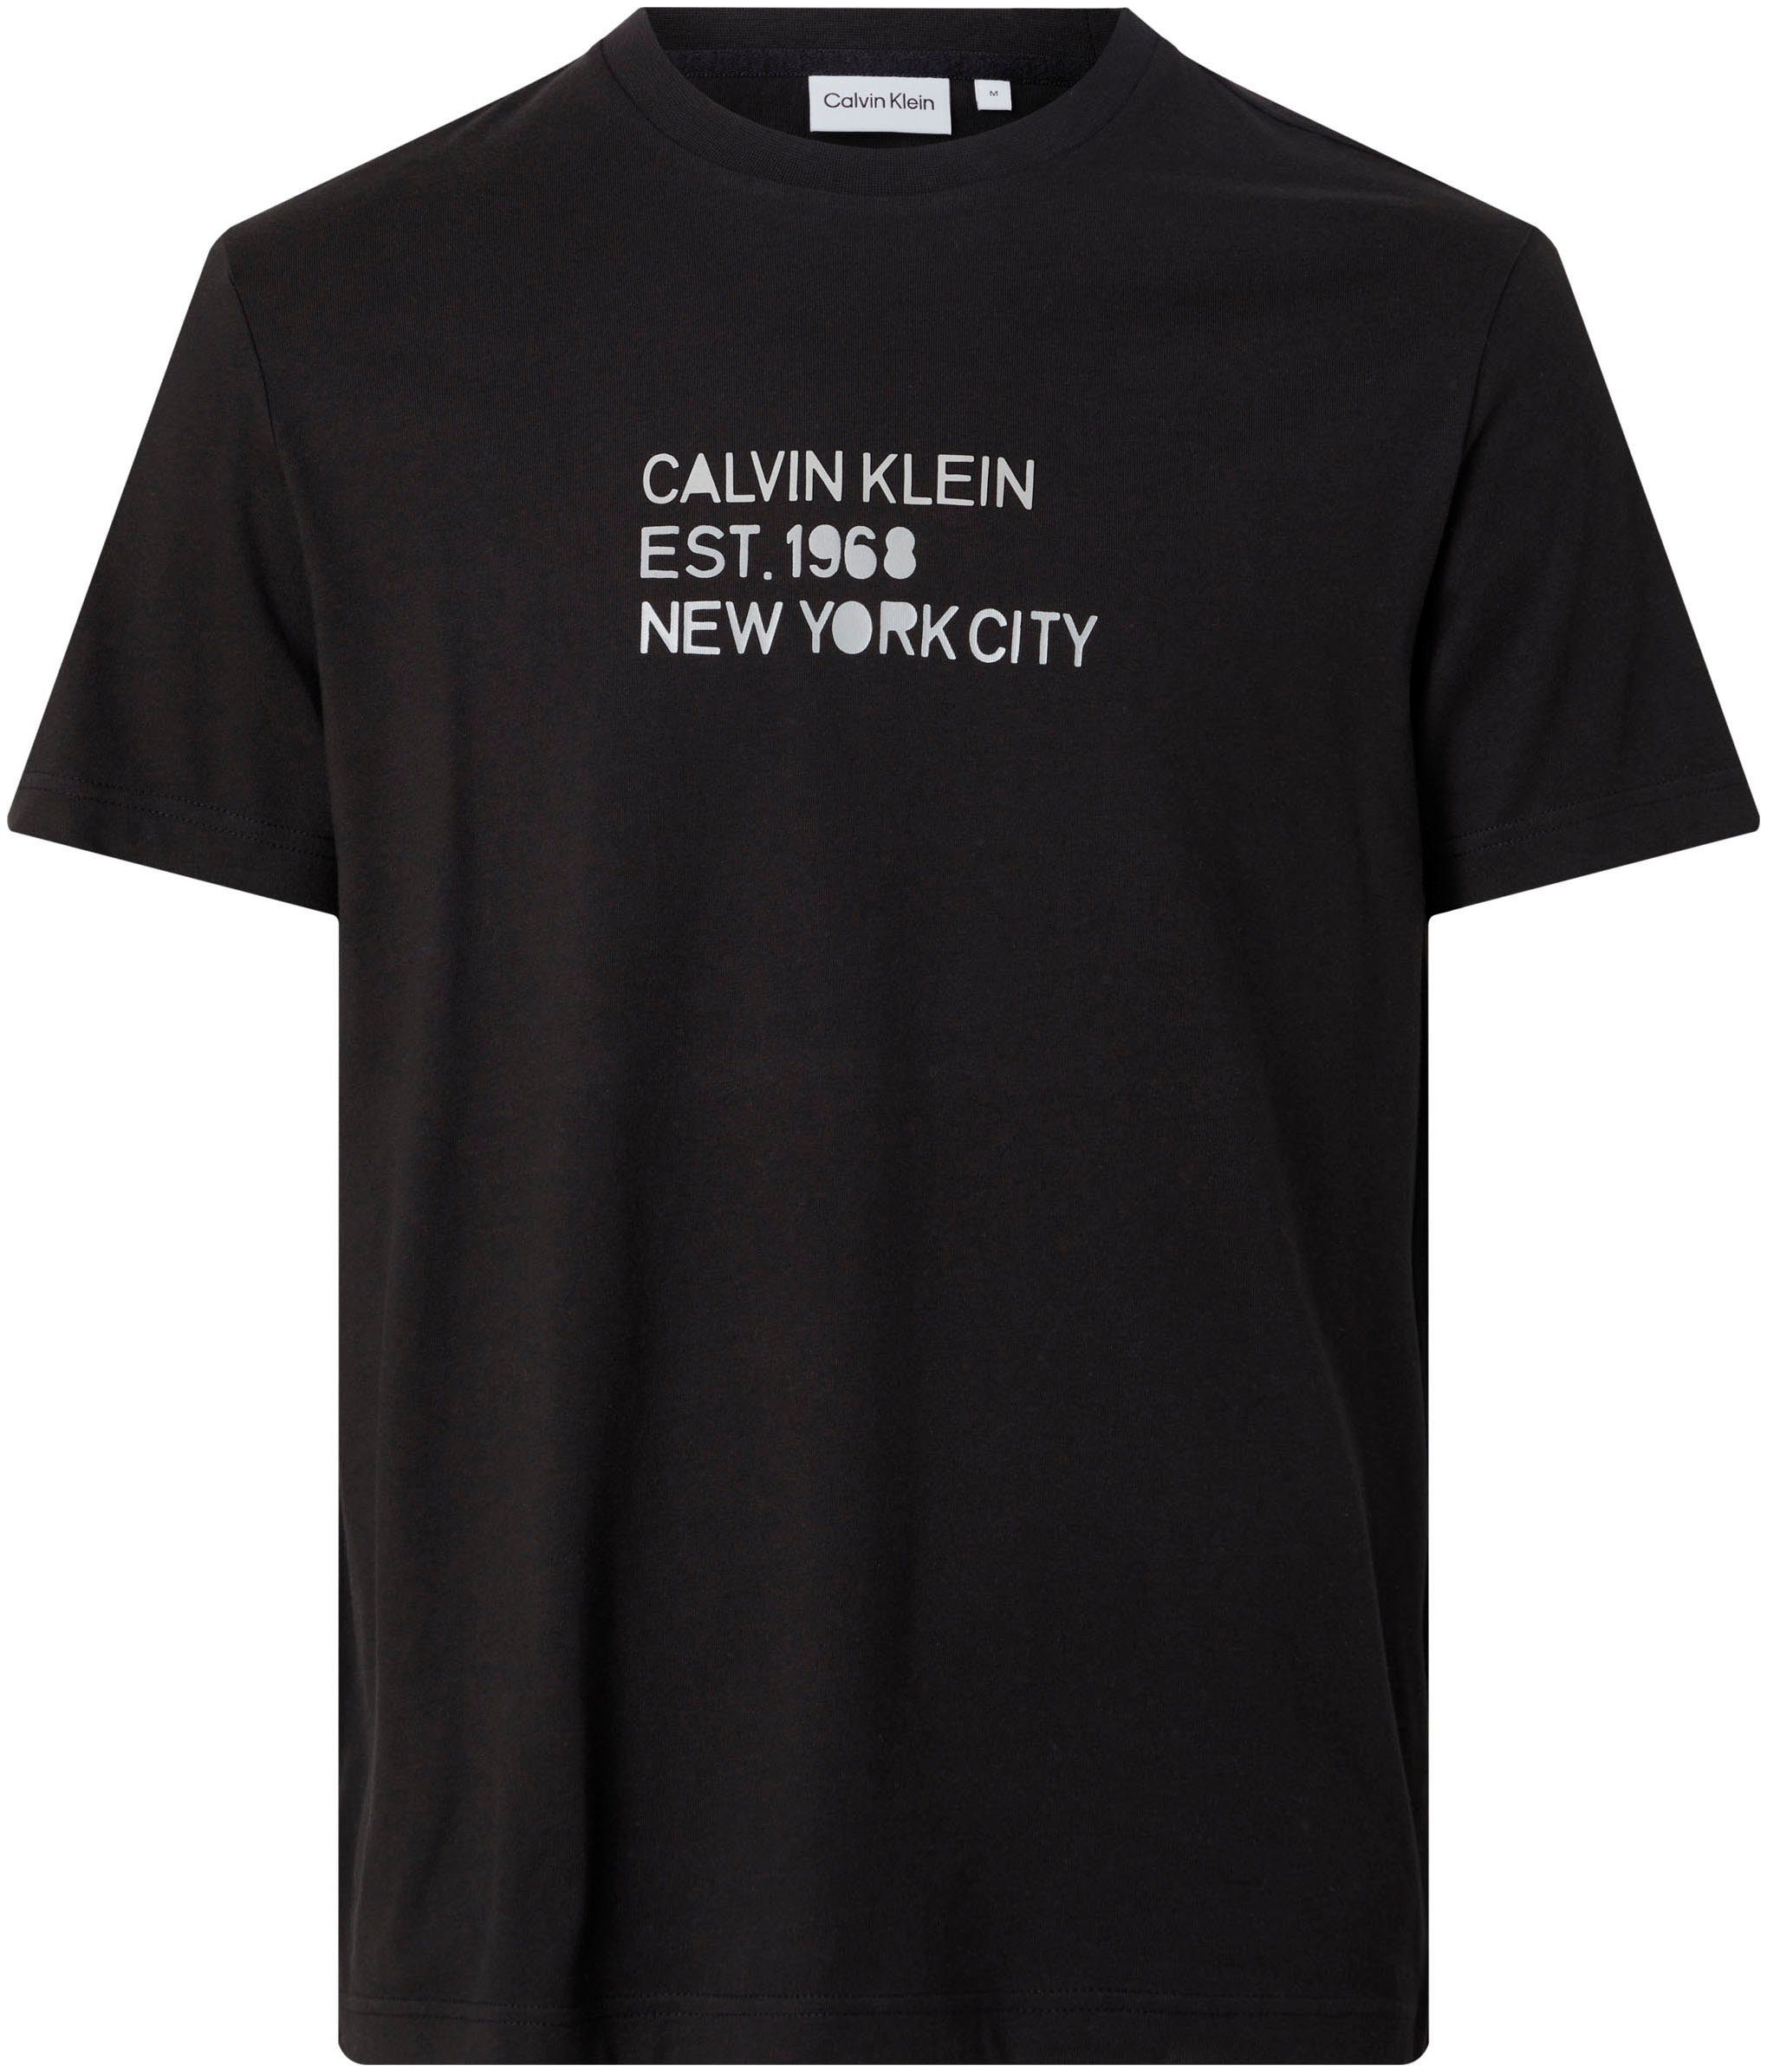 MIXED T-Shirt T-SHIRT PRINT LOGO Calvin Klein STENCIL